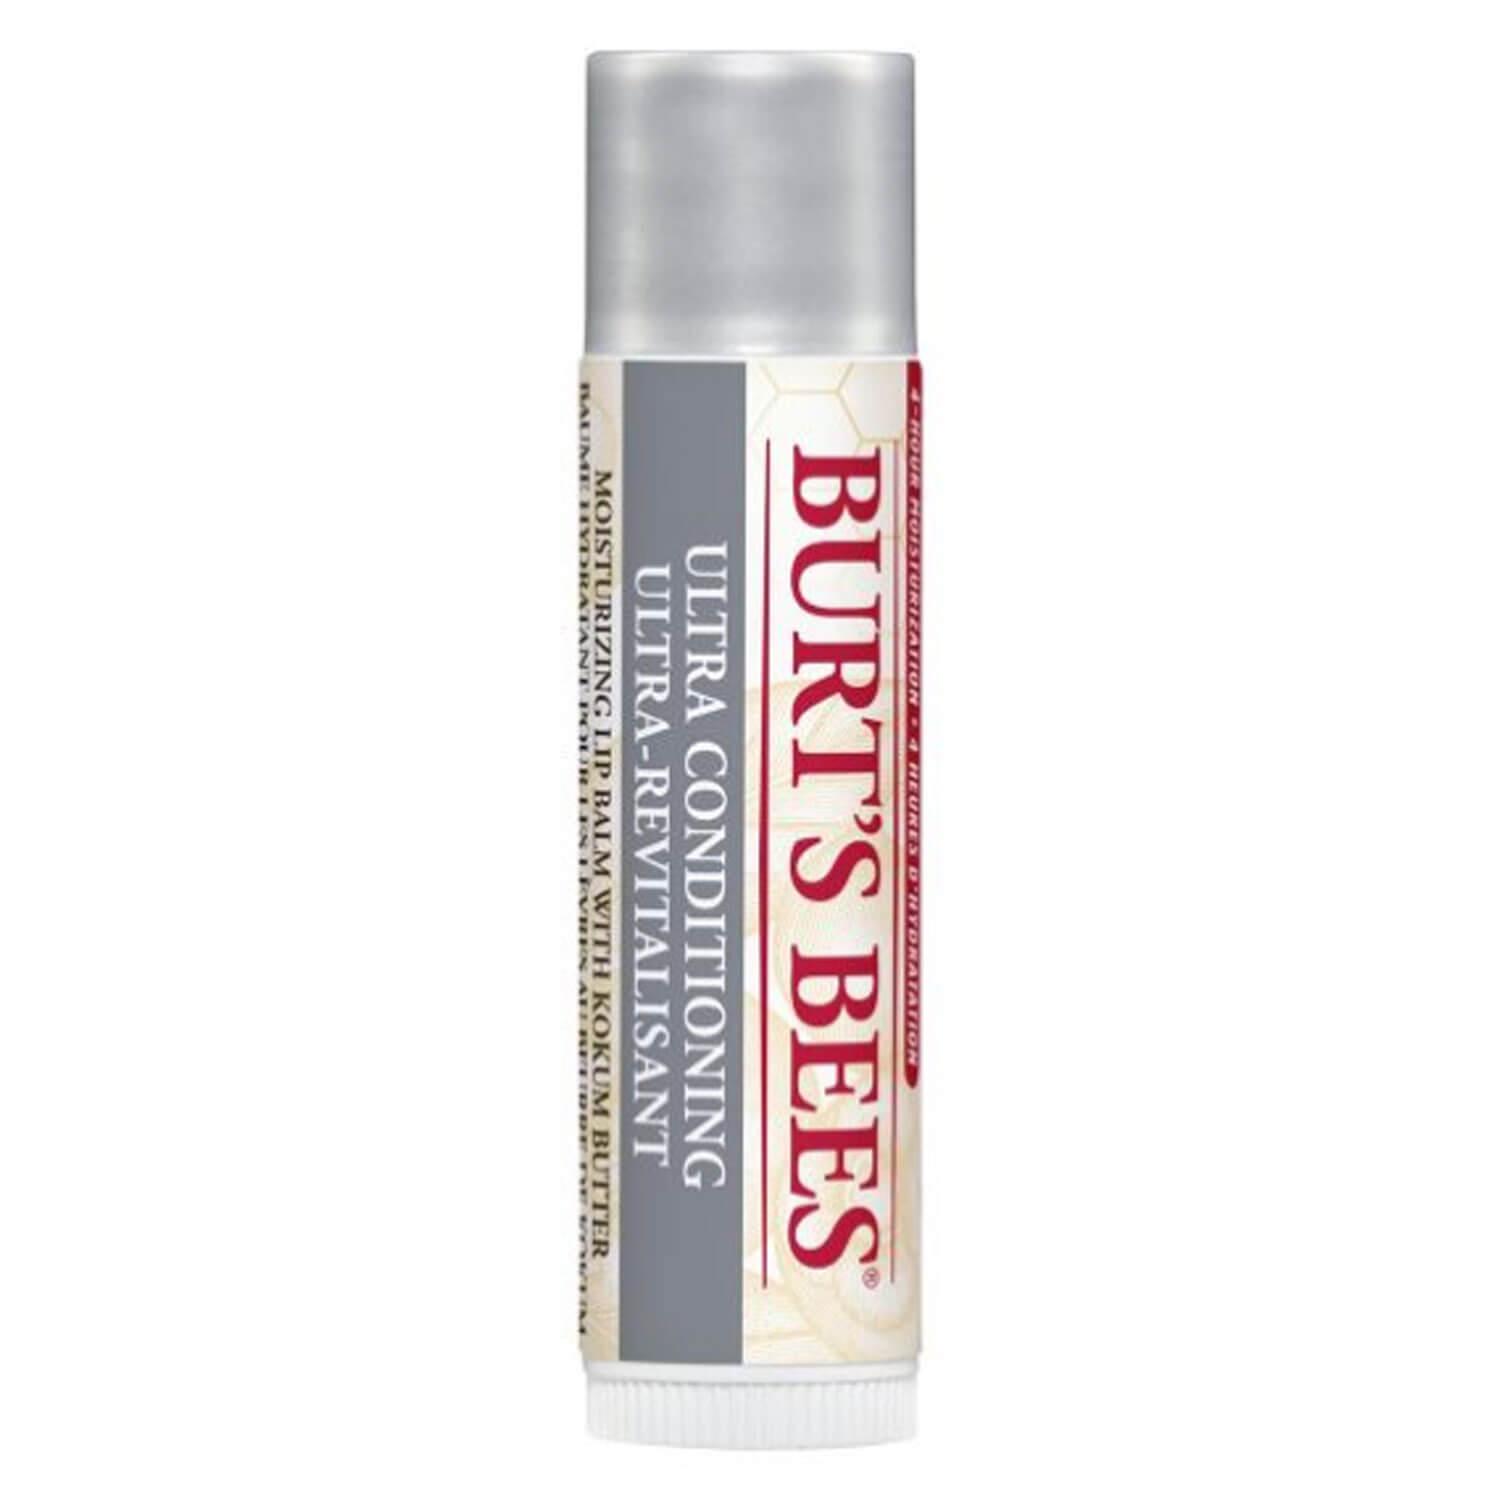 Burt's Bees - Lip Balm Ultra Conditioning Kokum Butter